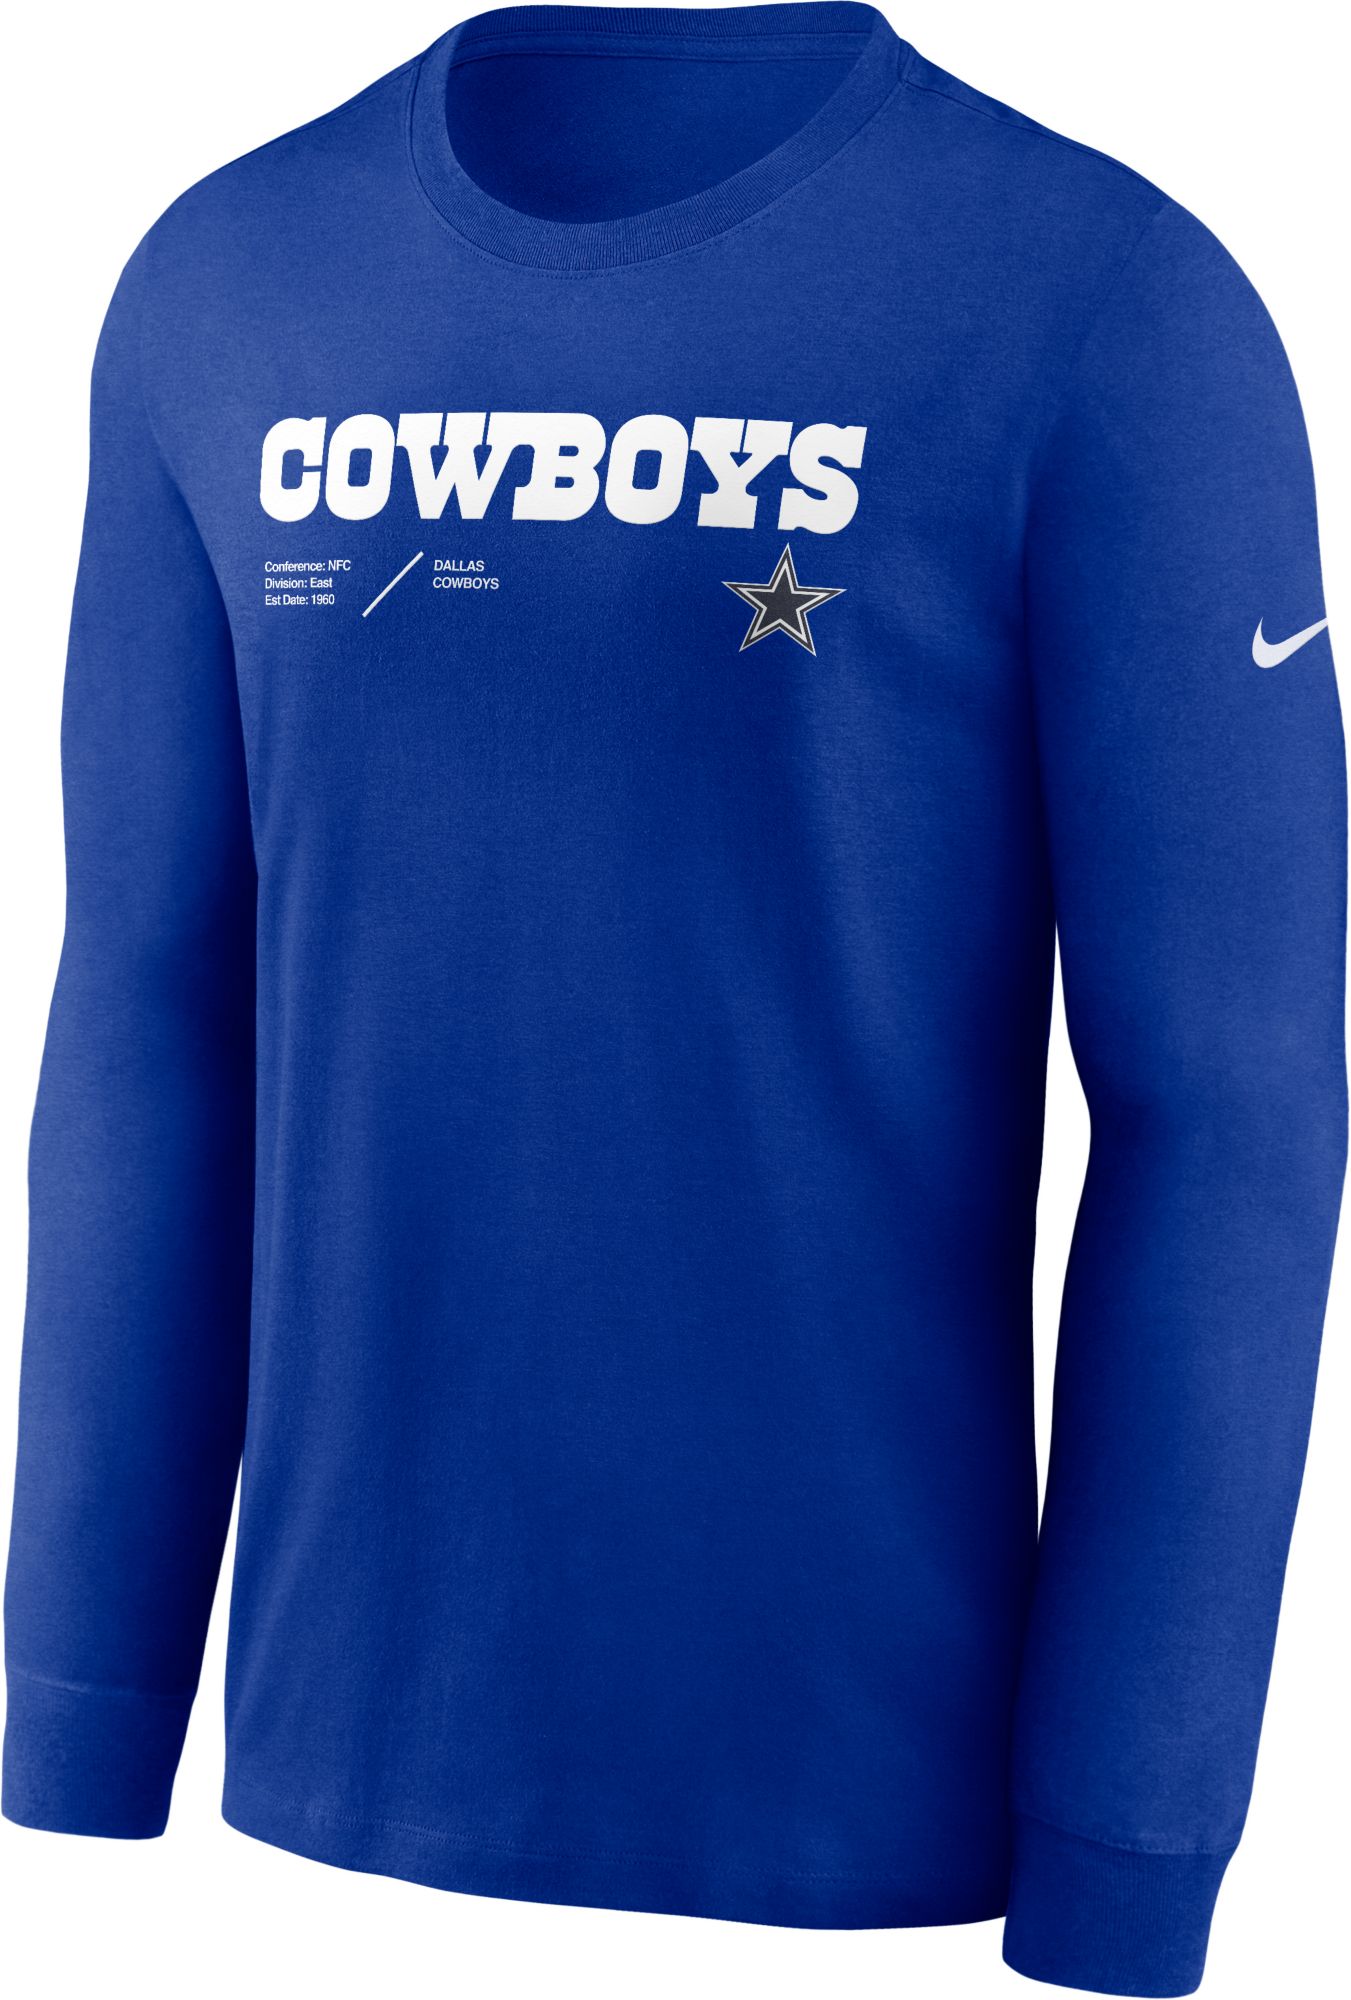 Cowboys sideline gear jersey